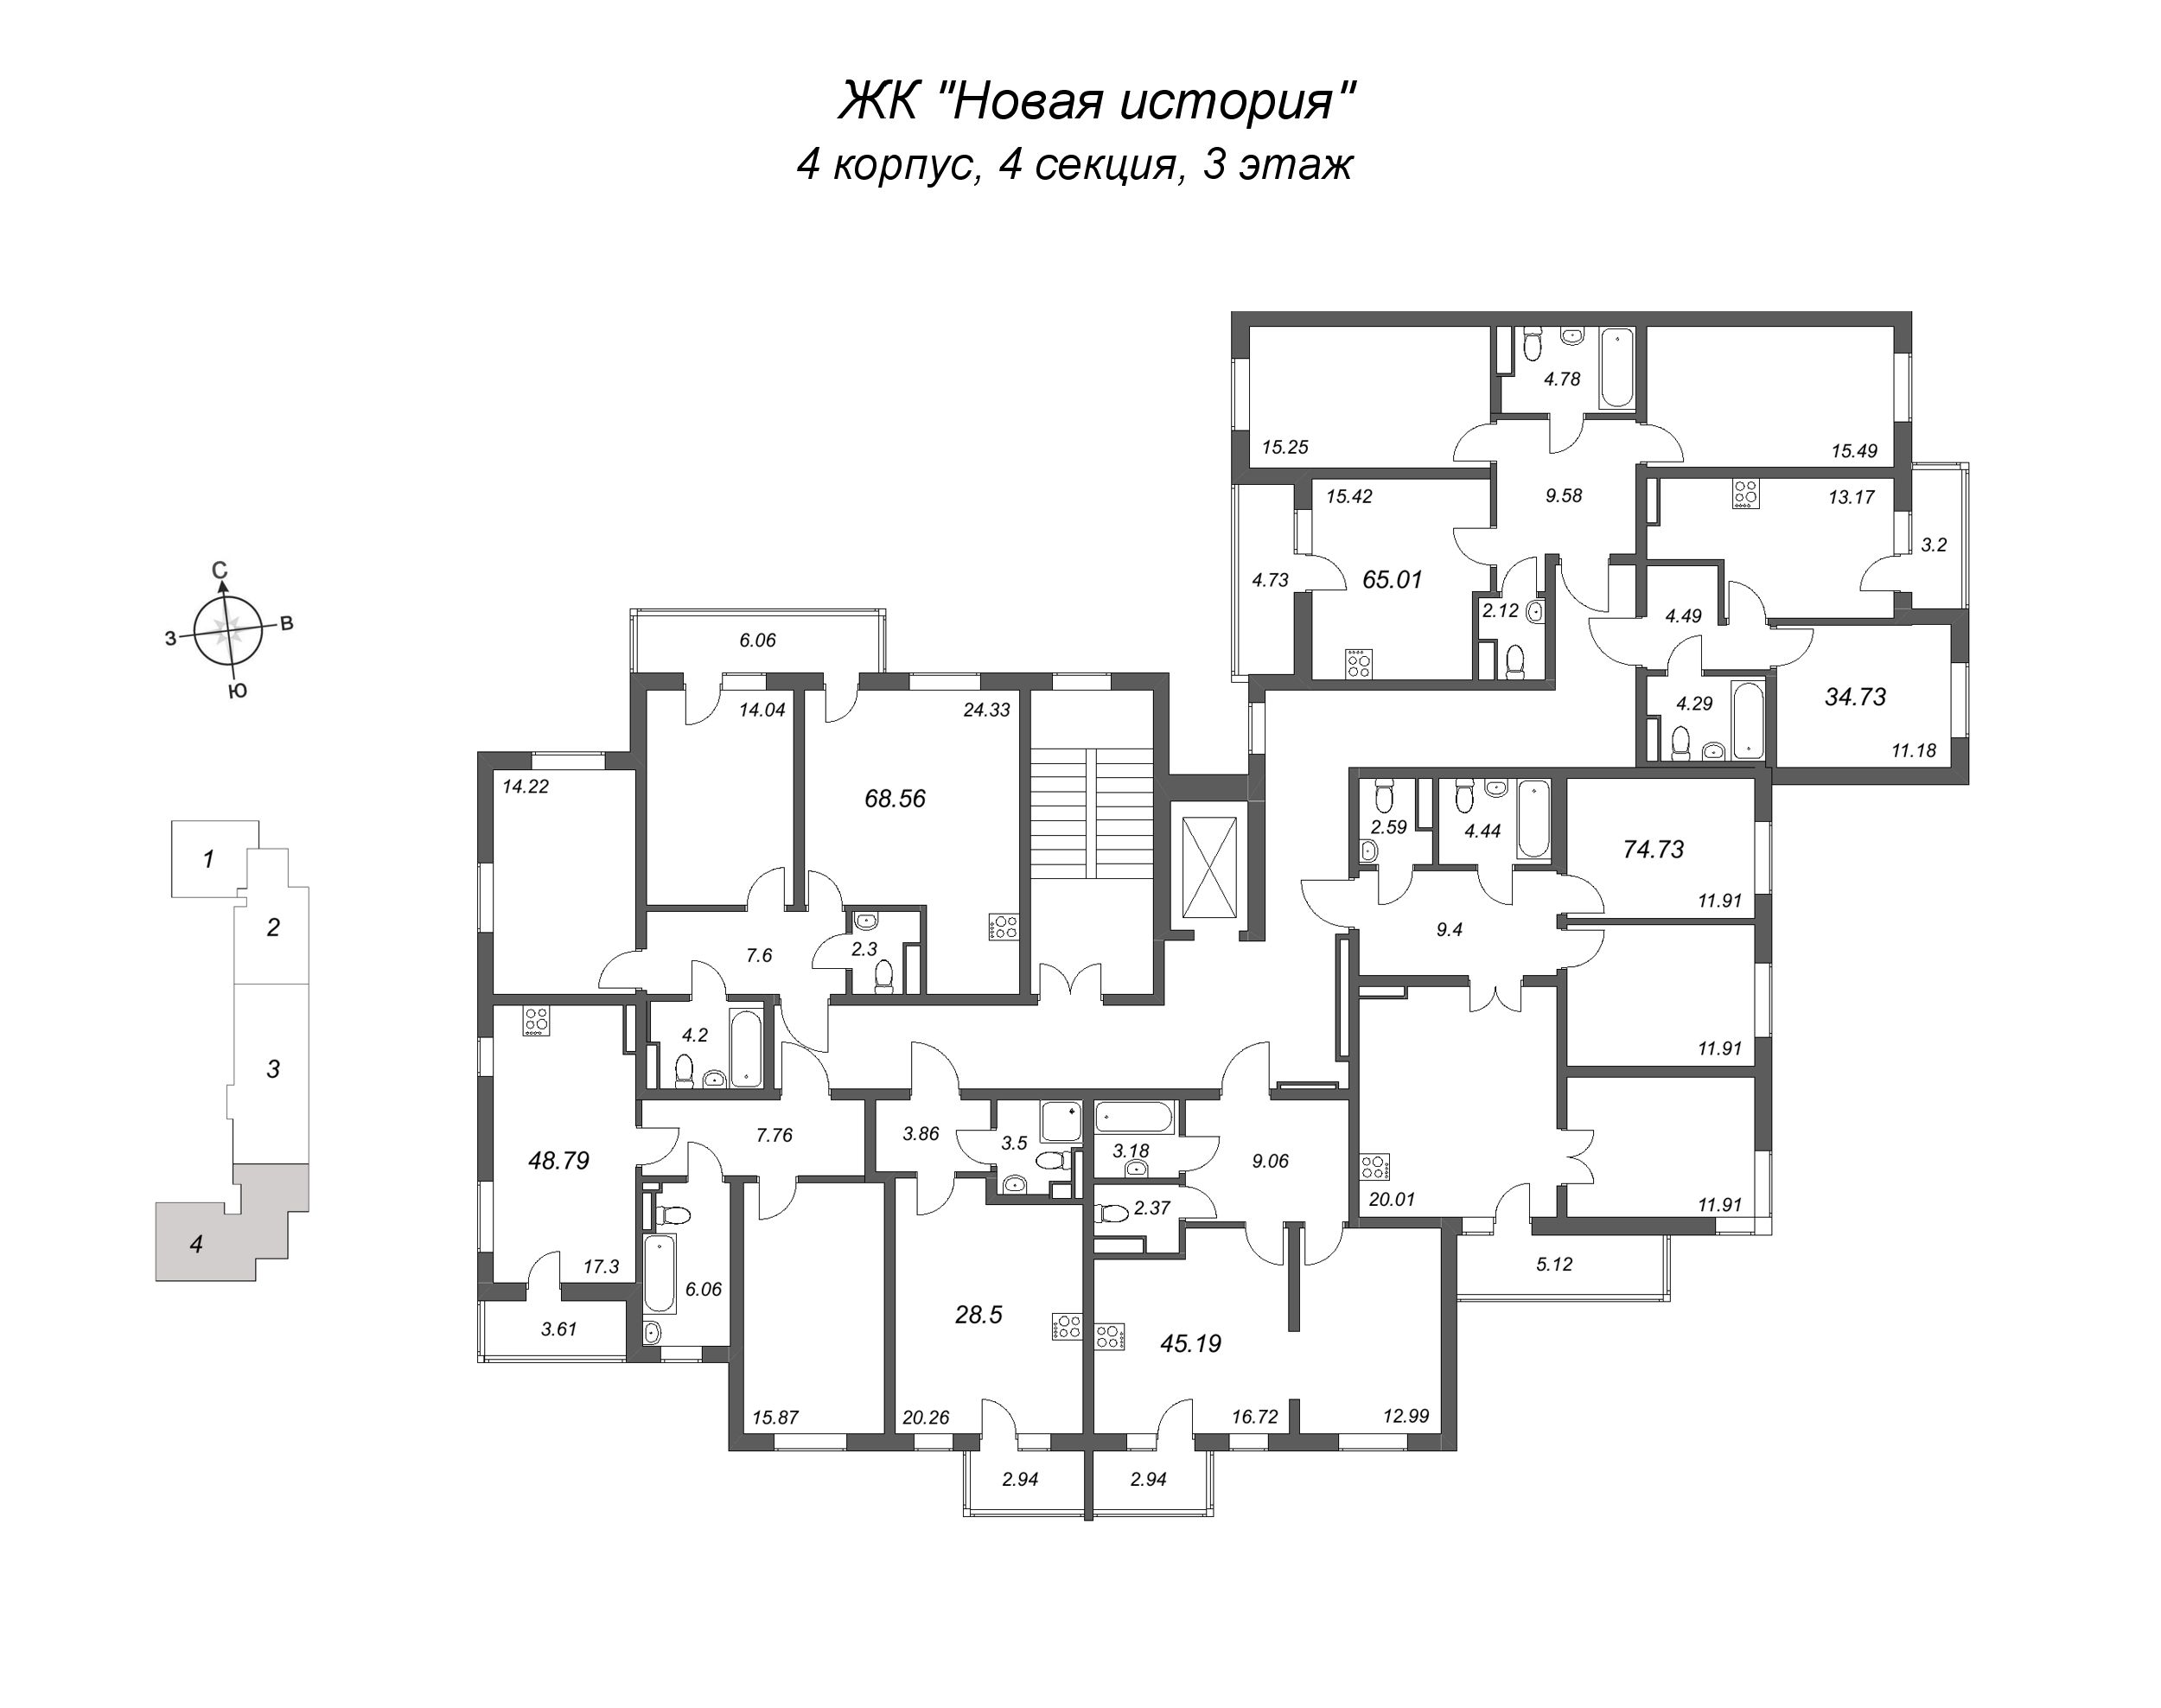 4-комнатная (Евро) квартира, 74.73 м² в ЖК "Новая история" - планировка этажа